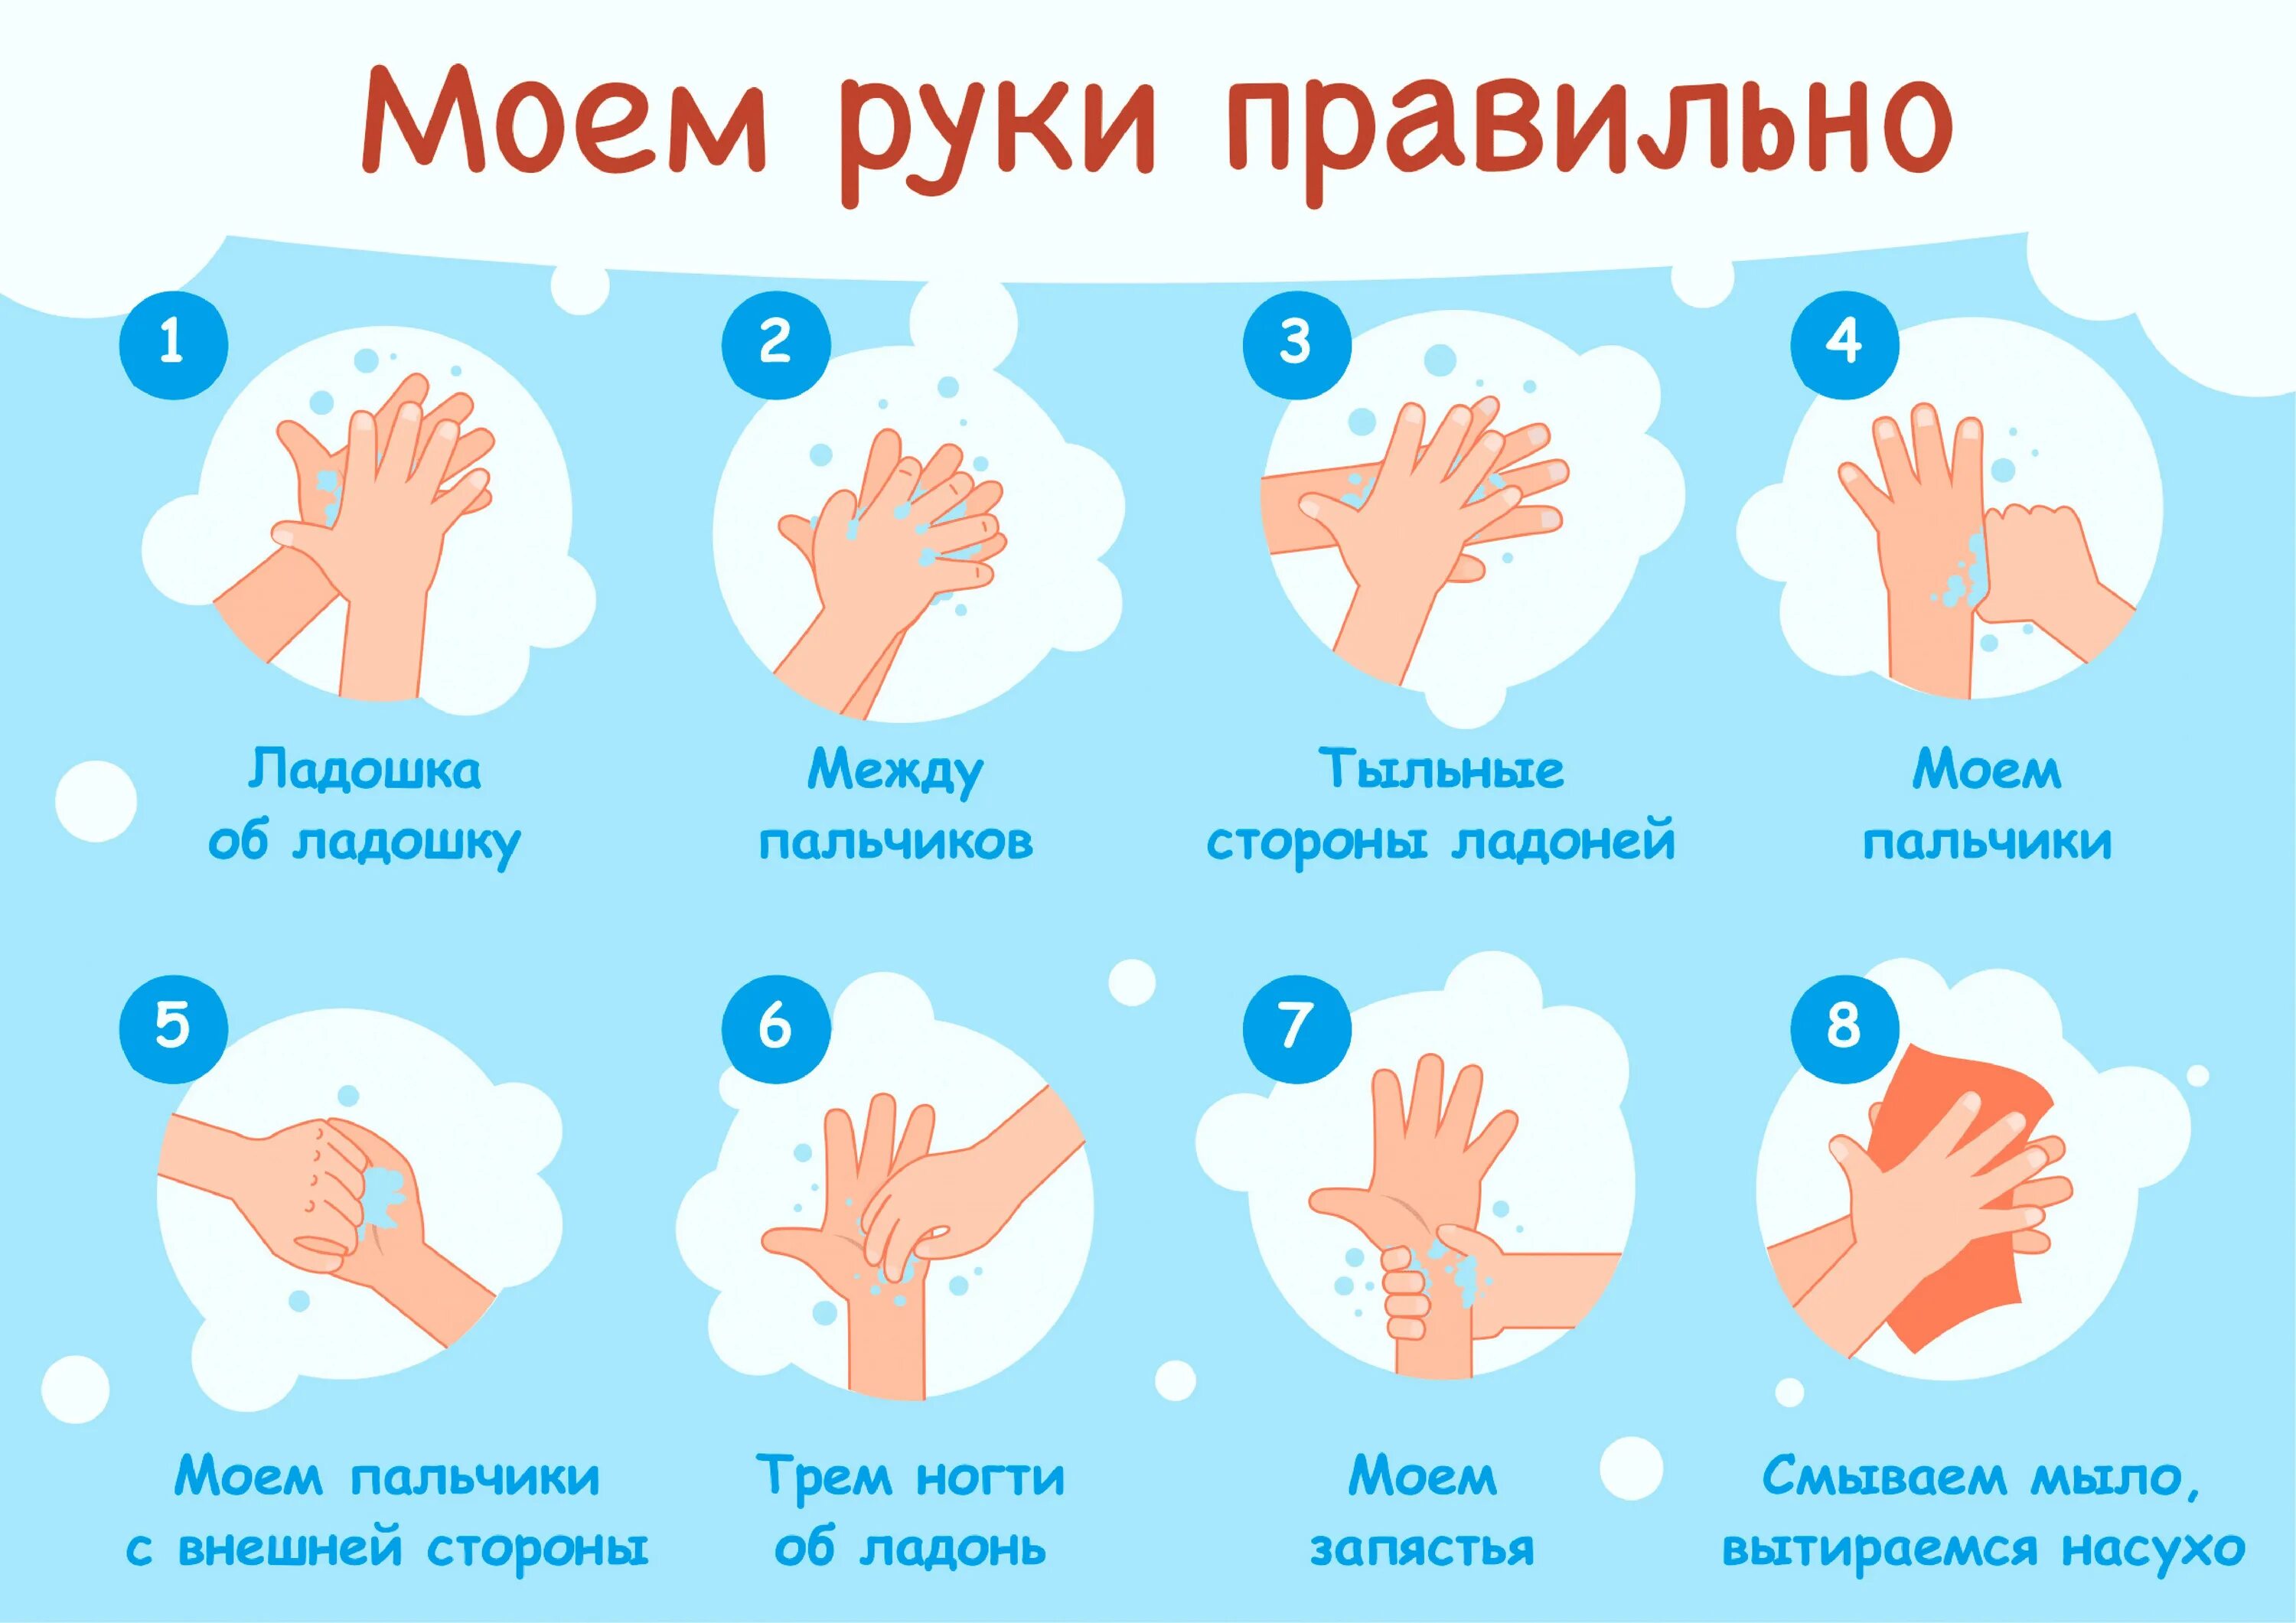 Мытьё рук. Алгоритм мытья рук. Как правильн Оымт ьруки. КККМ правильн омыть руки. Мытье рук дошкольников. Видеоуроки моем руки